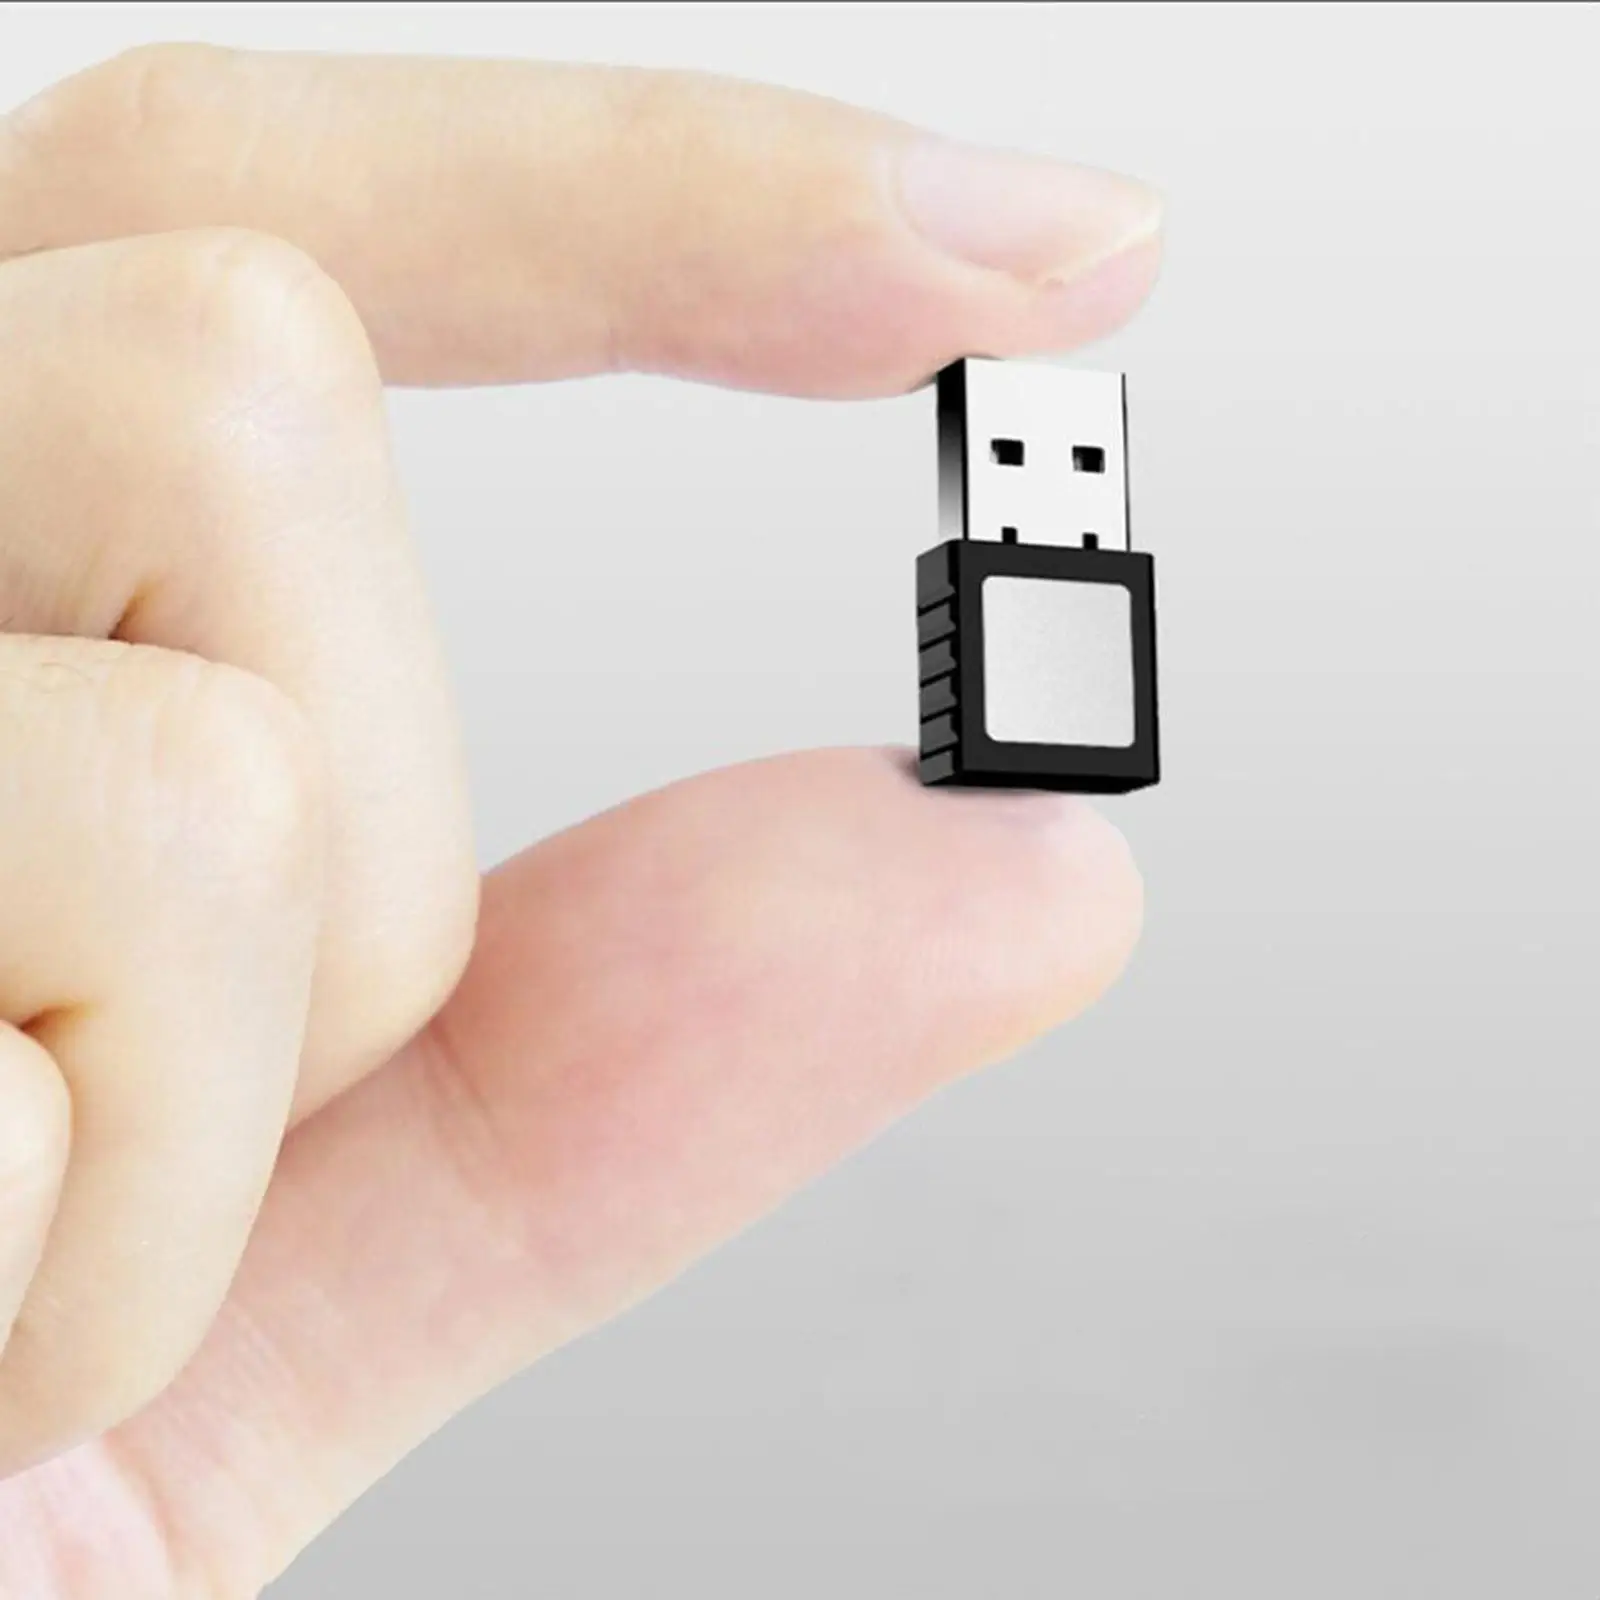 USB Fingerprint Reader Key Fingerprint Scanner Module Device for Windows 10 PC